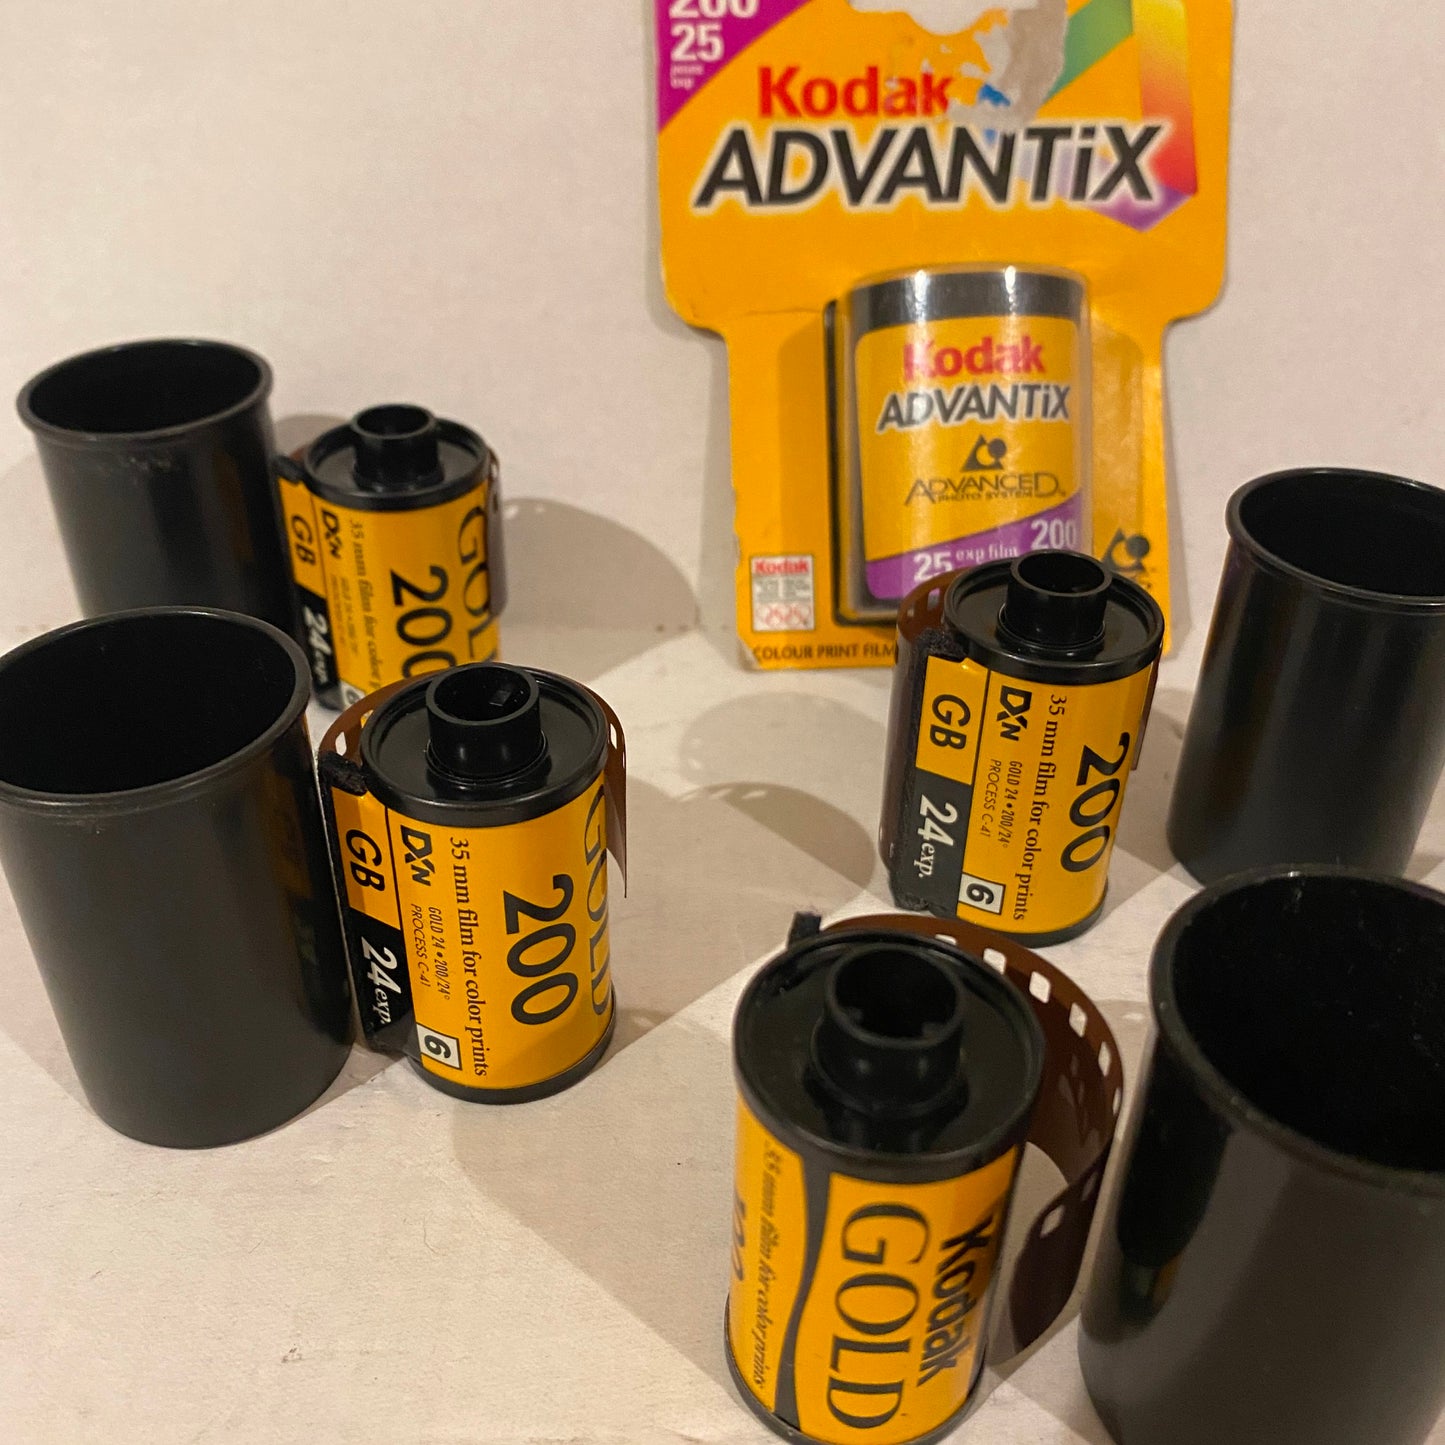 Lot of 7 - 35mm Kodak Gold Advantix Fuji Film